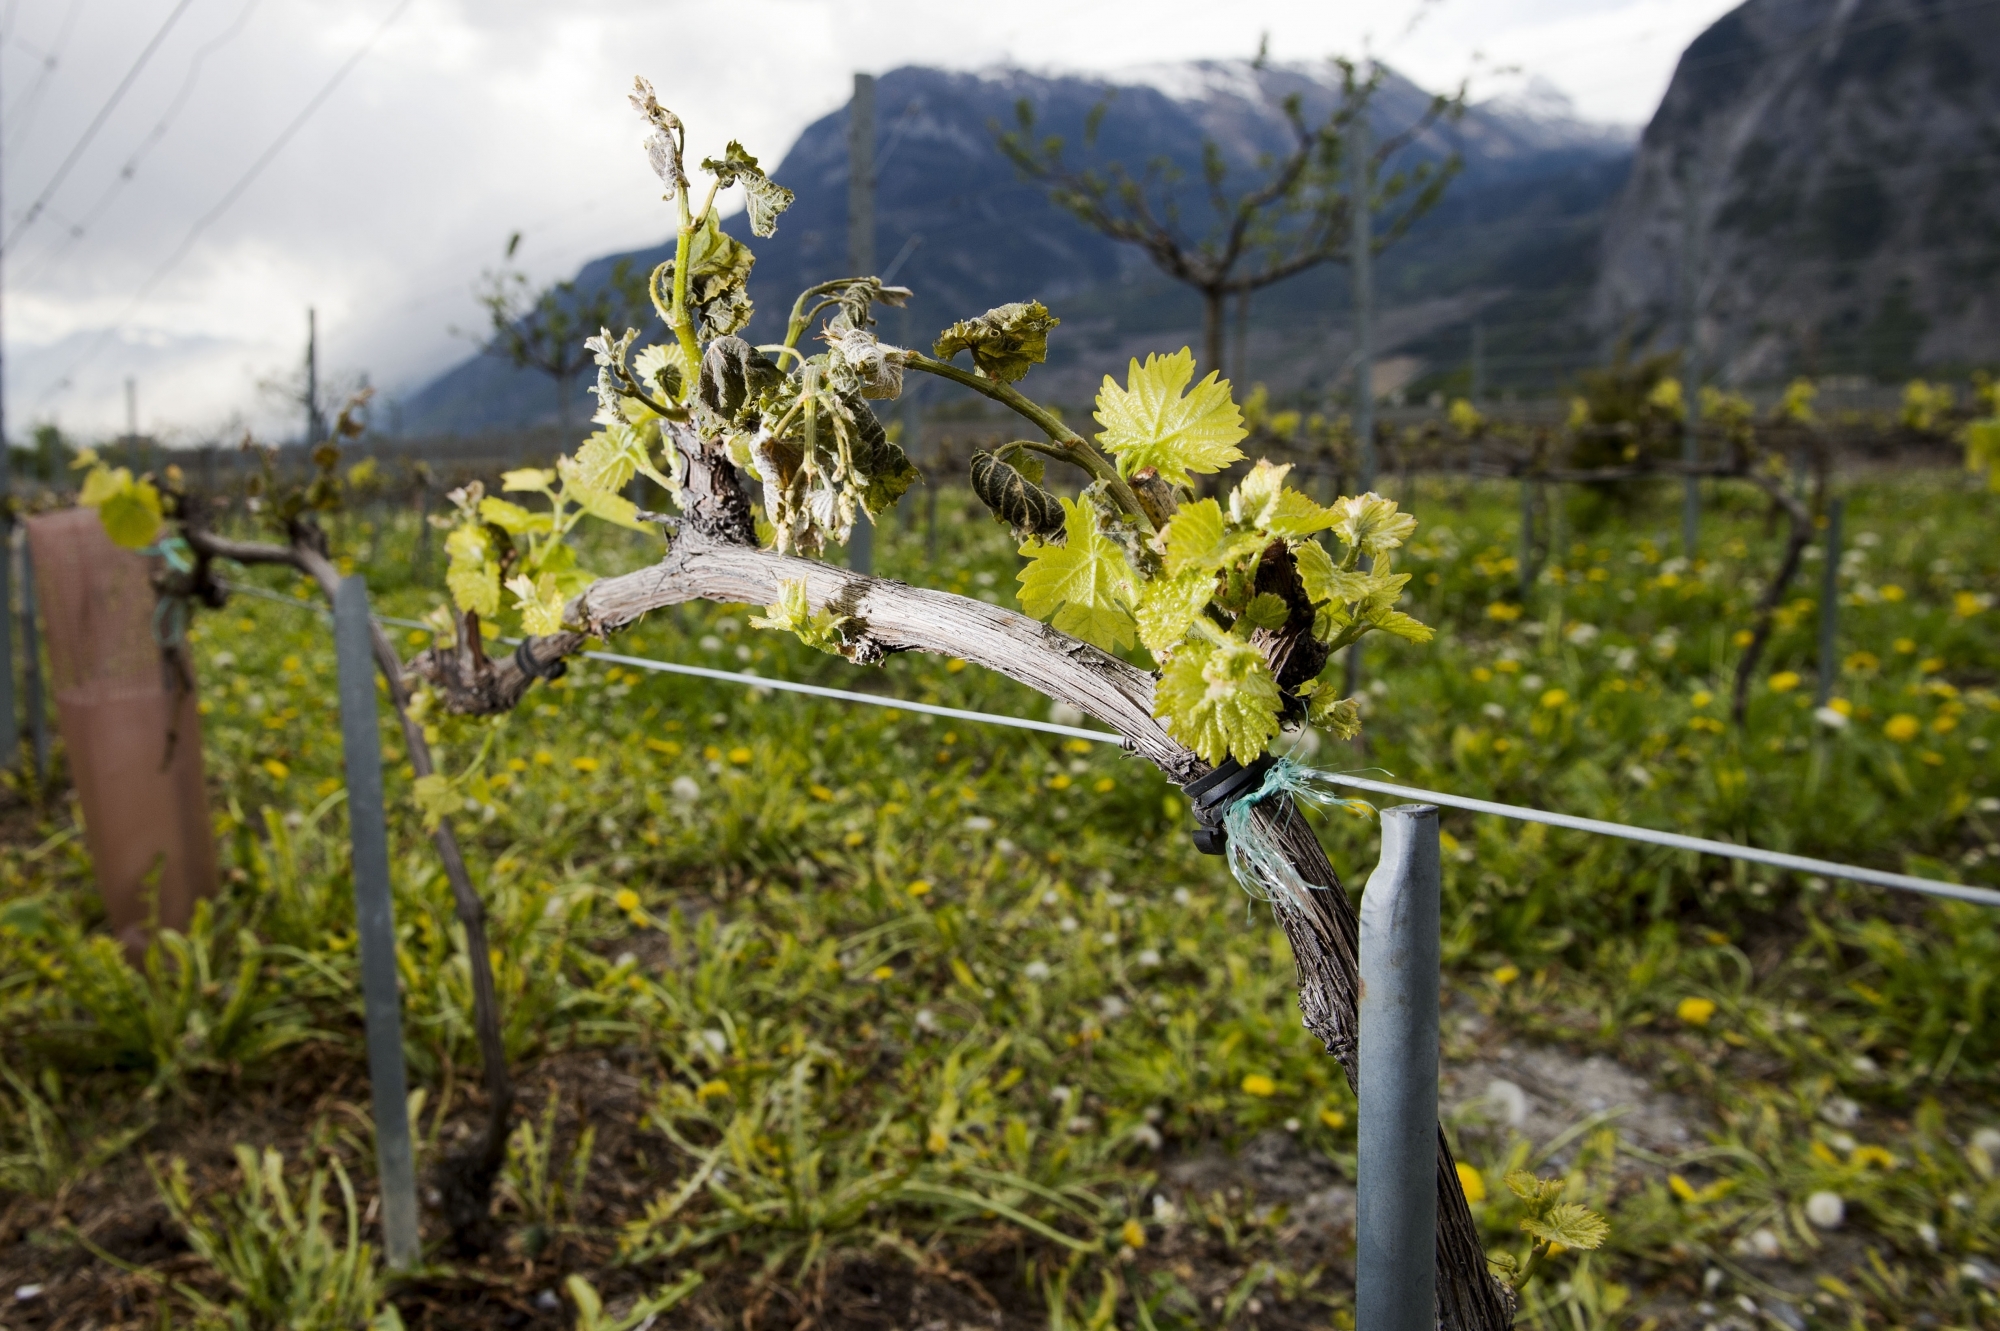 Le vignoble valaisan a été durement frappé par le gel ce printemps. Les redevances vont baisser pour soulager les propriétaires.